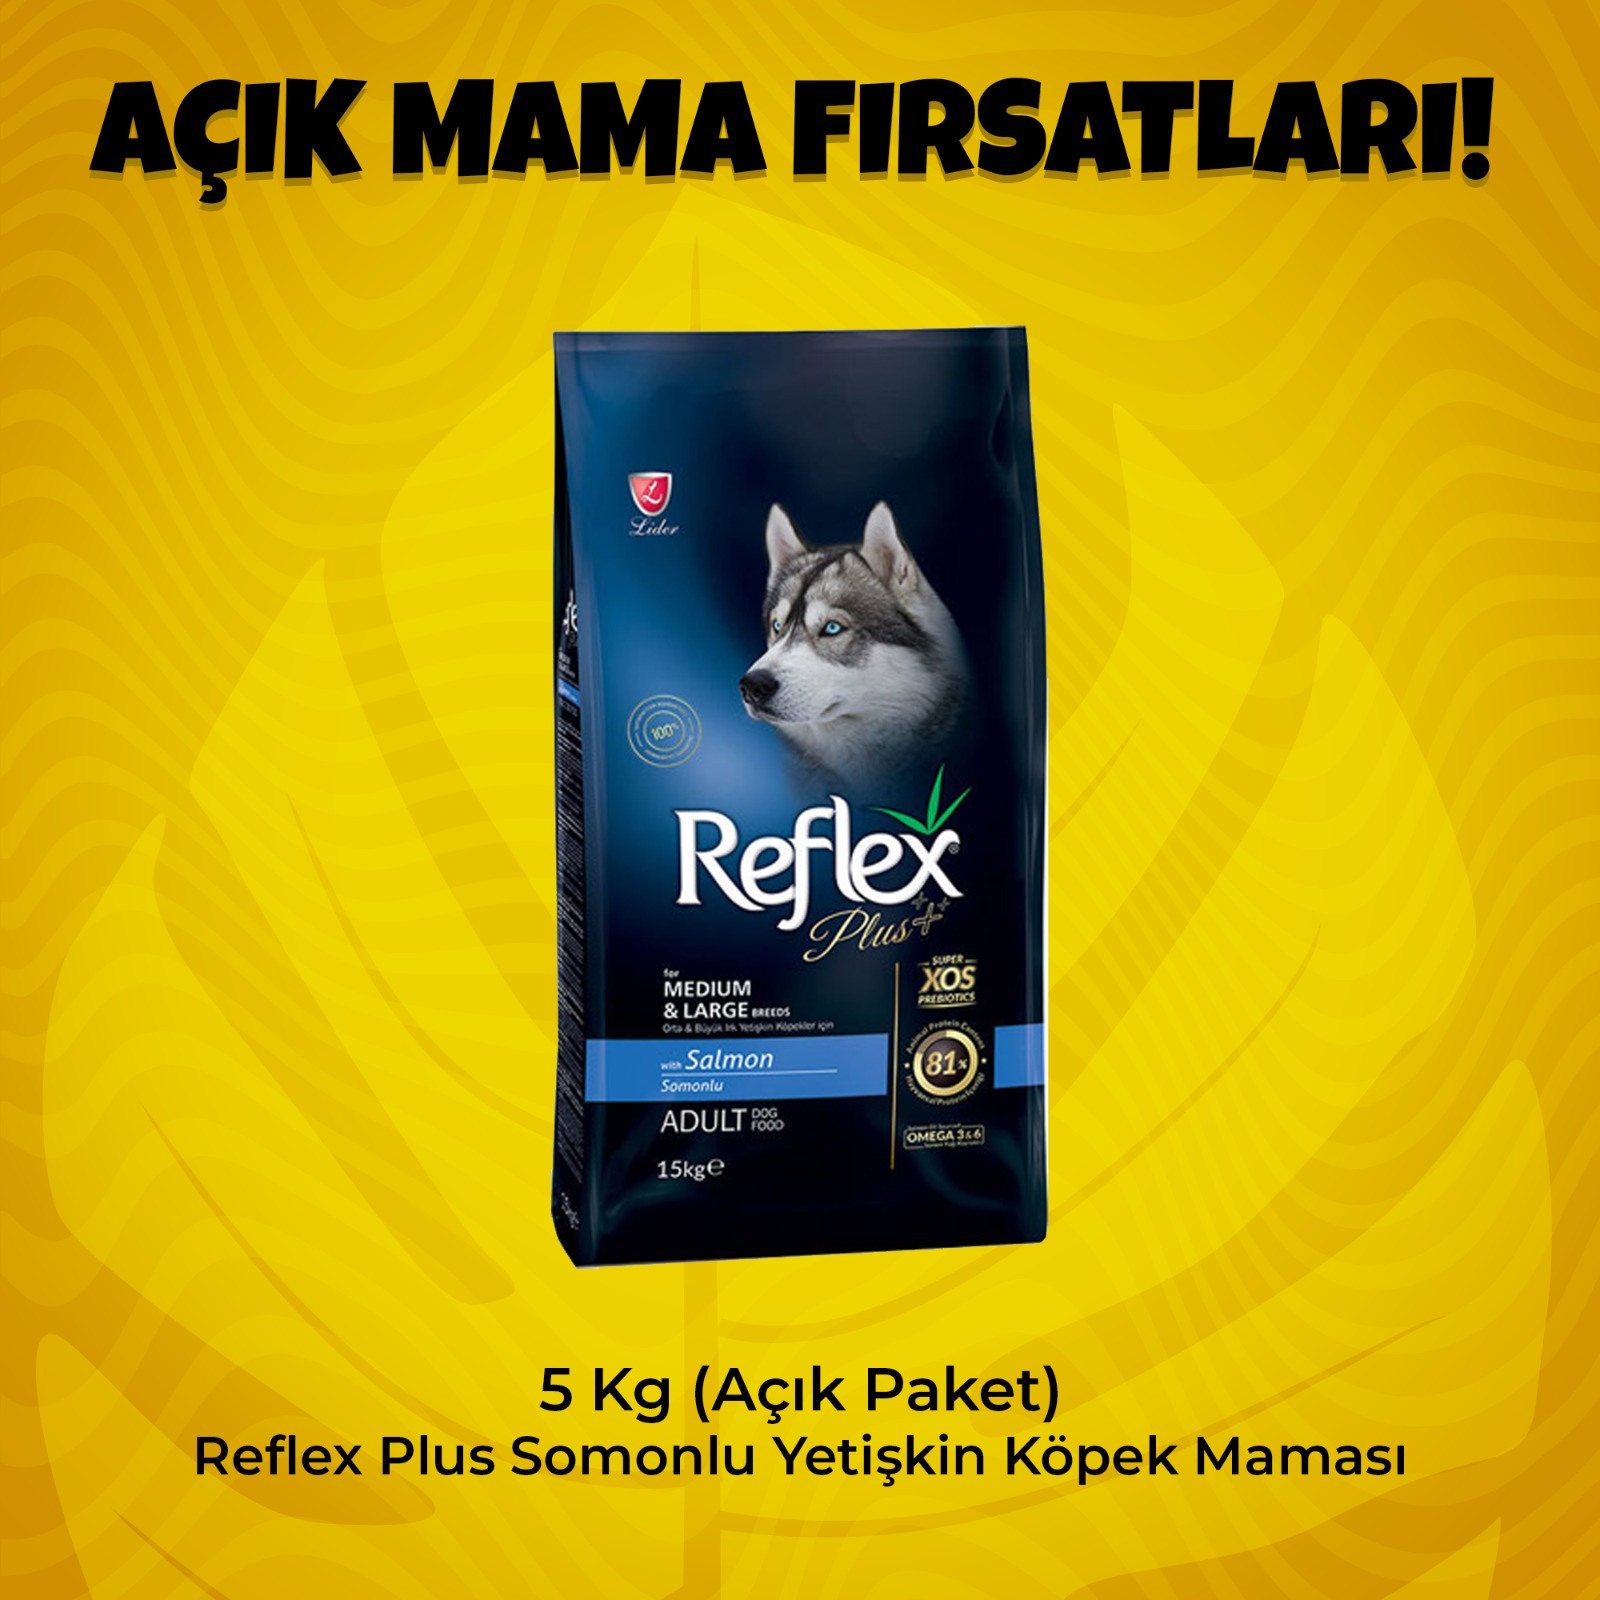 5 Kg (Açık Paket) Reflex Plus Somonlu Yetişkin Köpek Maması